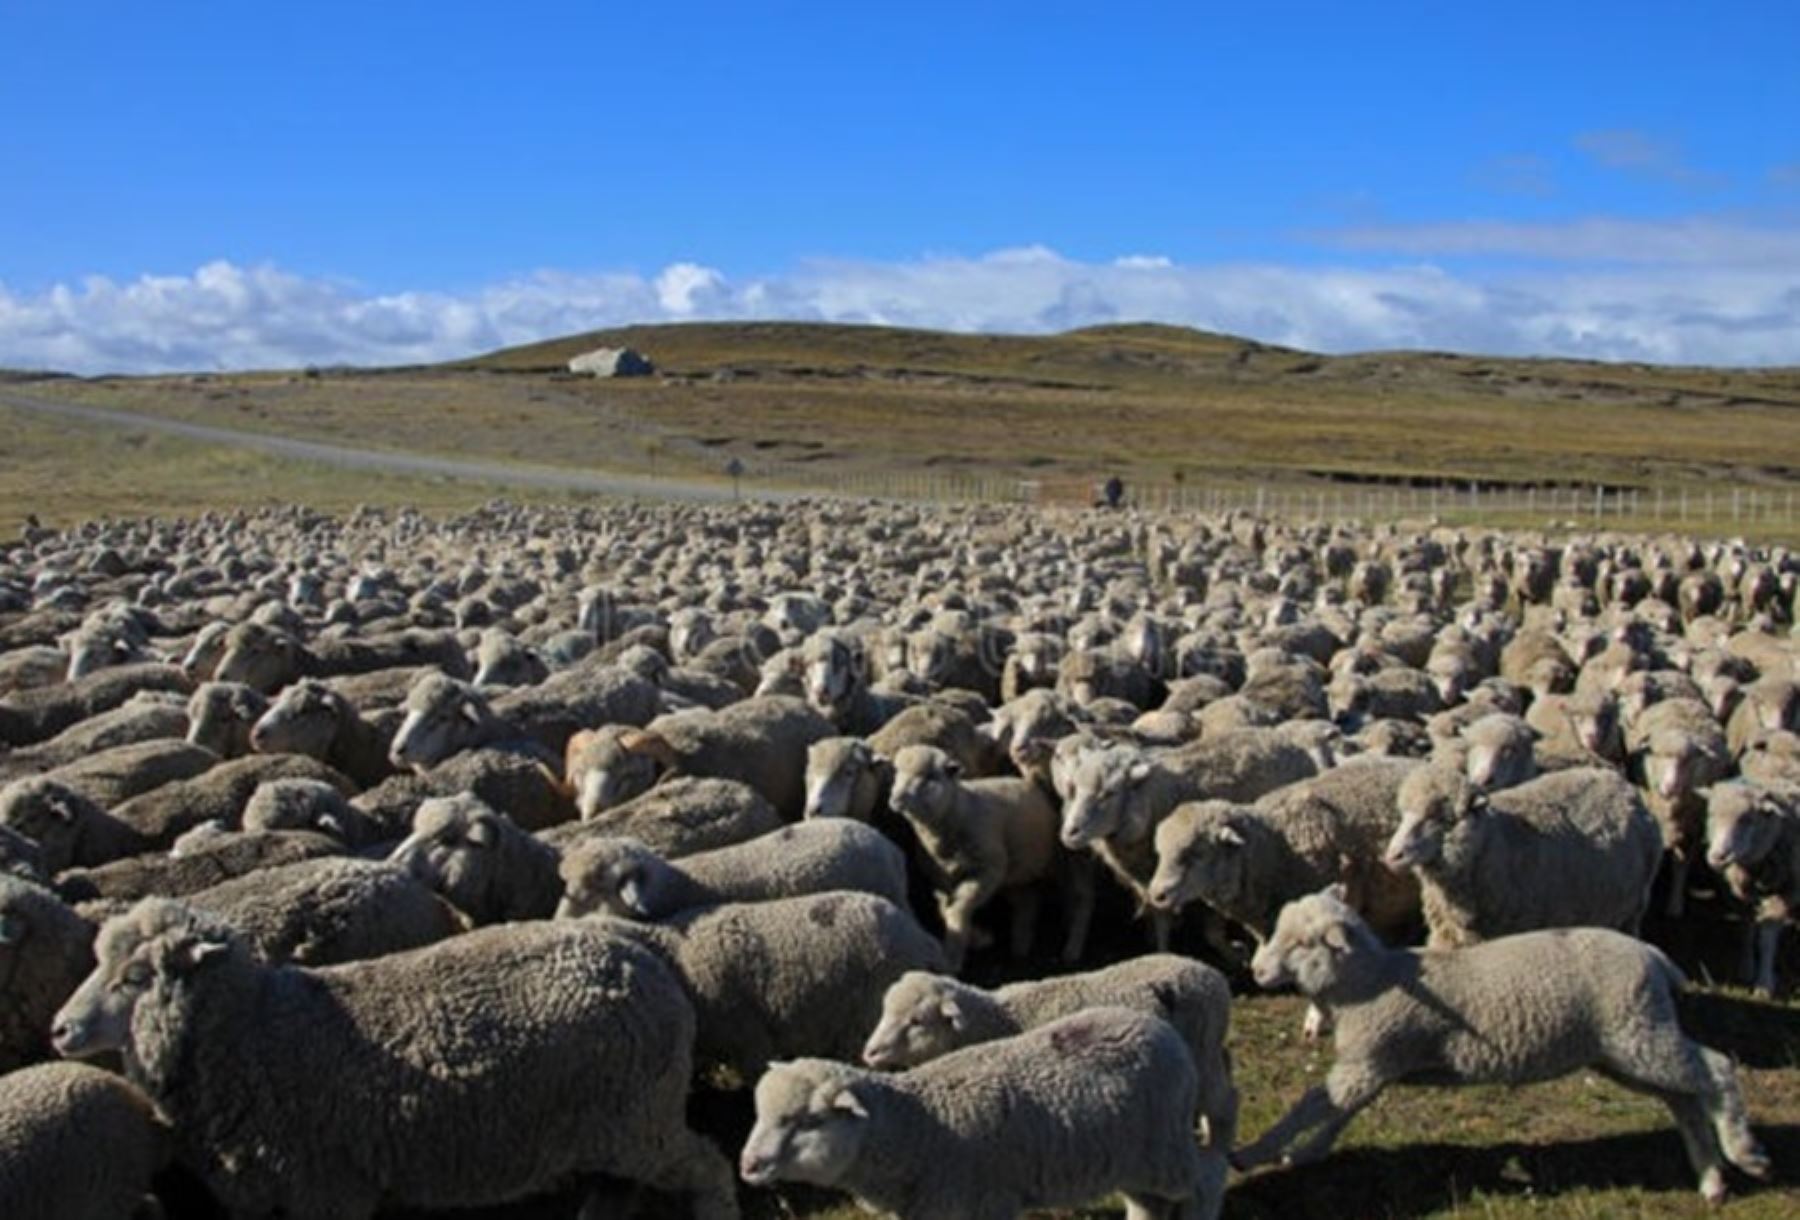 El Gobierno, a través del Ministerio de Desarrollo Agrario y Riego, inició el proyecto “Mejoramiento de ganado ovino en las comunidades campesinas del distrito de San Antón, provincia de Azángaro”, en la región Puno.